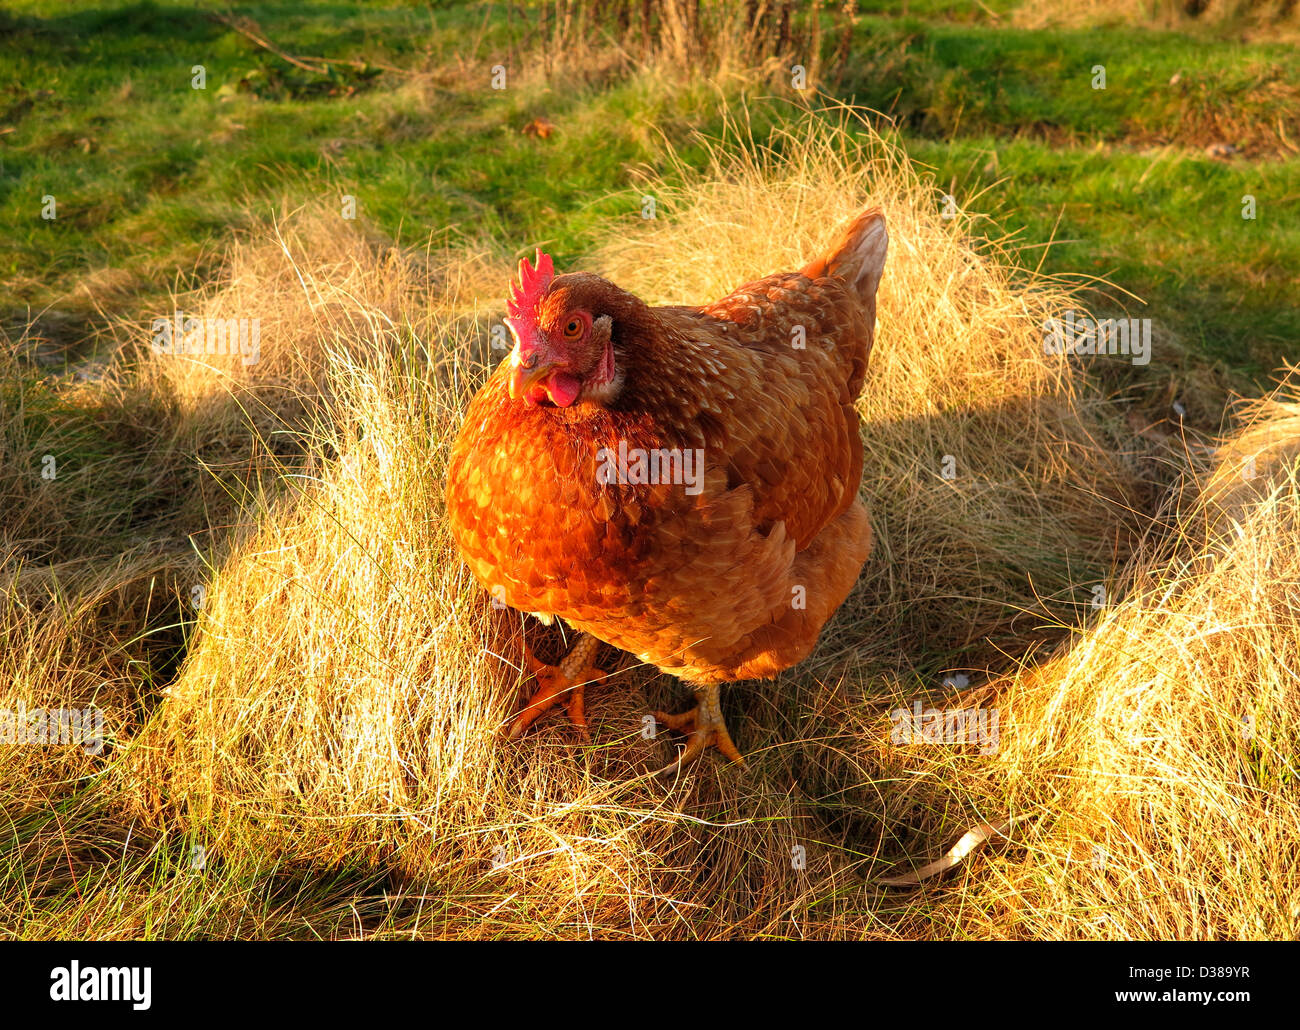 Hen addomestica (Gallus gallus), russet hen, farm hen, passeggiate nel prato del giardino. Pays de la Loire, Francia. Foto Stock